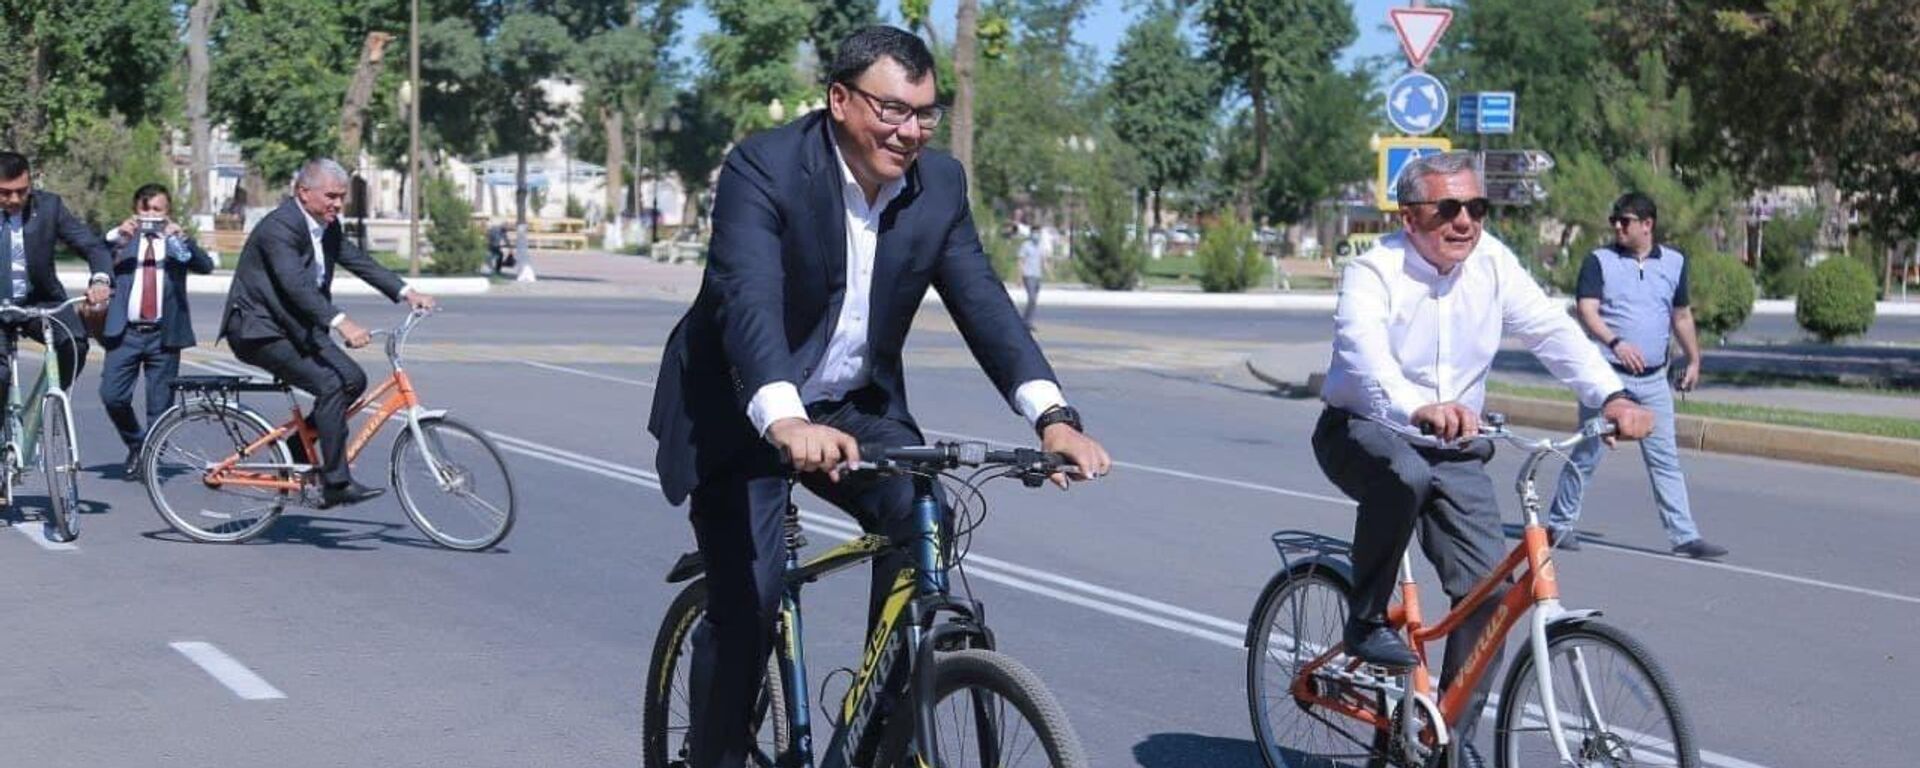 Рустам Минниханов проехал по улицам Бухары на велосипеде - Sputnik Узбекистан, 1920, 17.06.2021